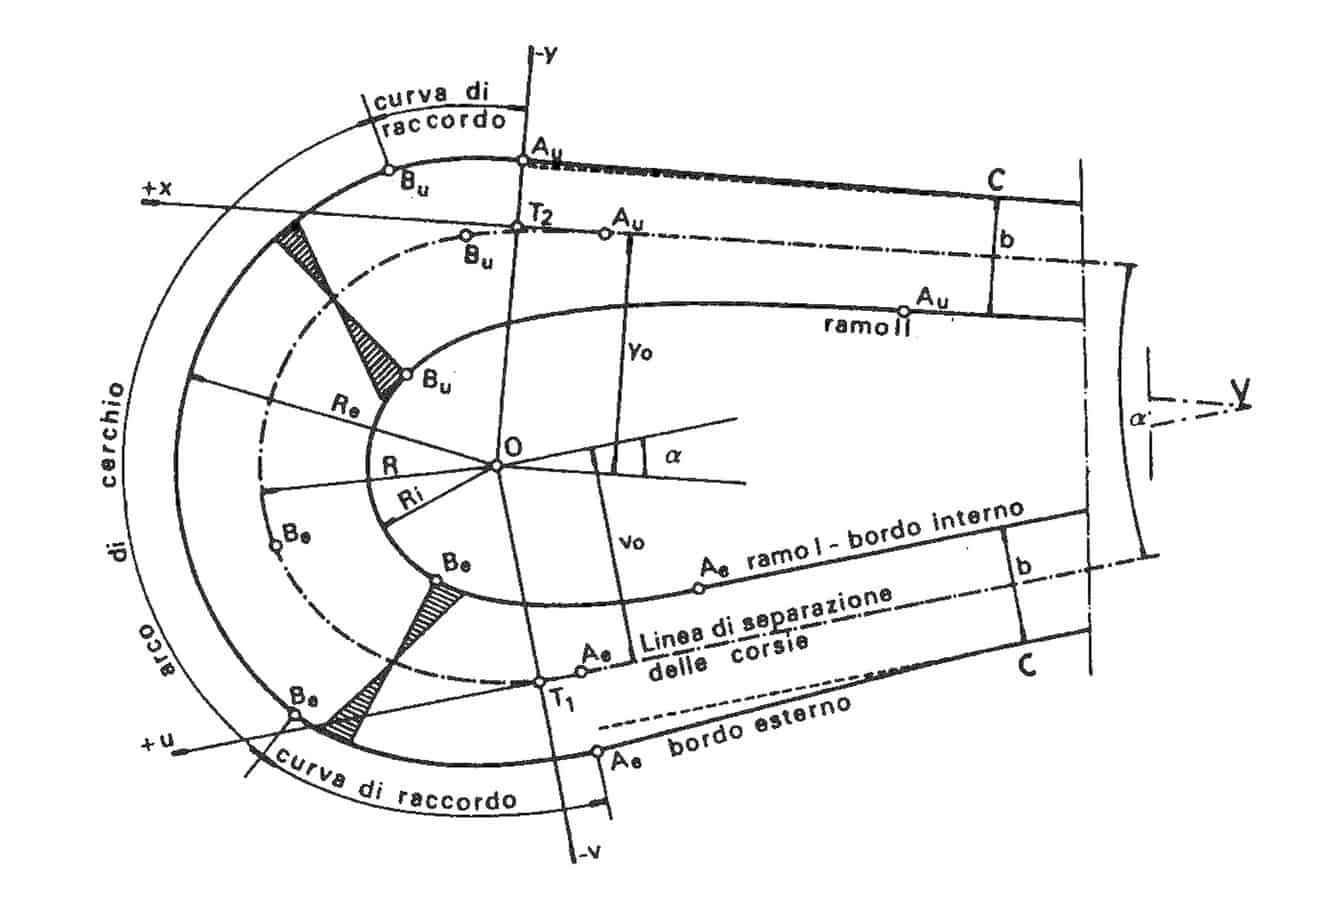 La progettazione geometrica di un tornante secondo la Norma svizzera SNV 640198